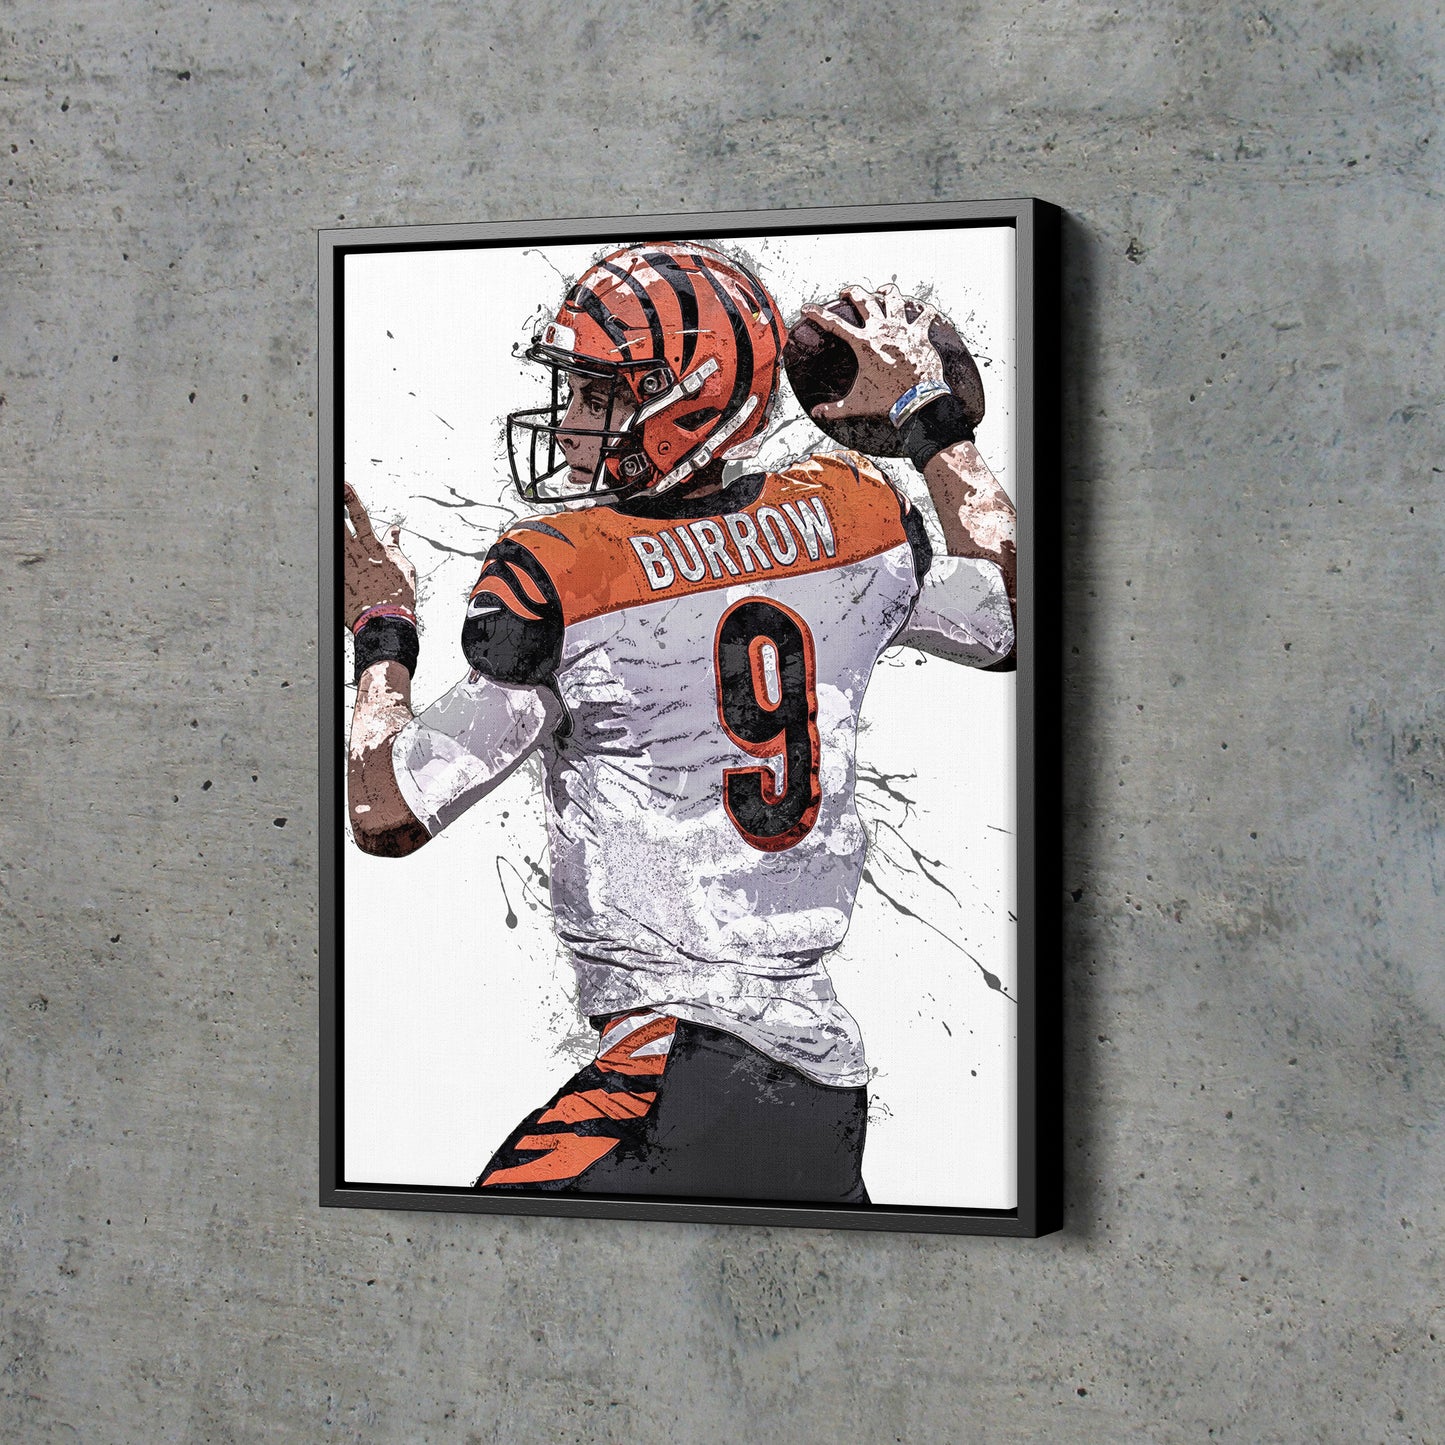 Joe Burrow Art Poster Cincinnati Bengals Football Hand Made Posters Canvas Framed Print Wall Kids Art Man Cave Gift Home Decor